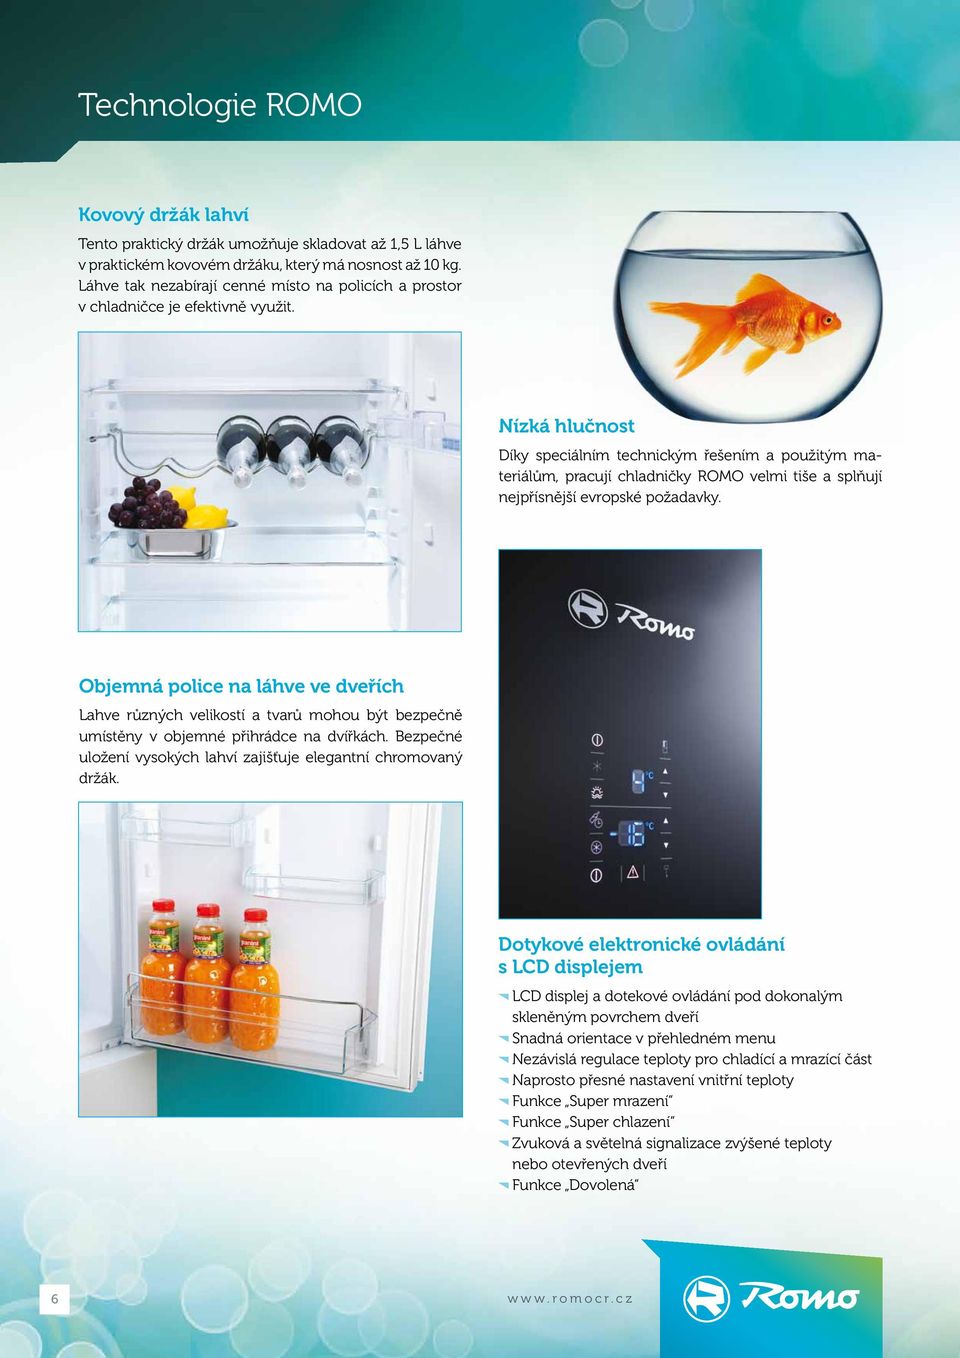 Nízká hlučnost Díky speciálním technickým řešením a použitým materiálům, pracují chladničky ROMO velmi tiše a splňují nejpřísnější evropské požadavky.